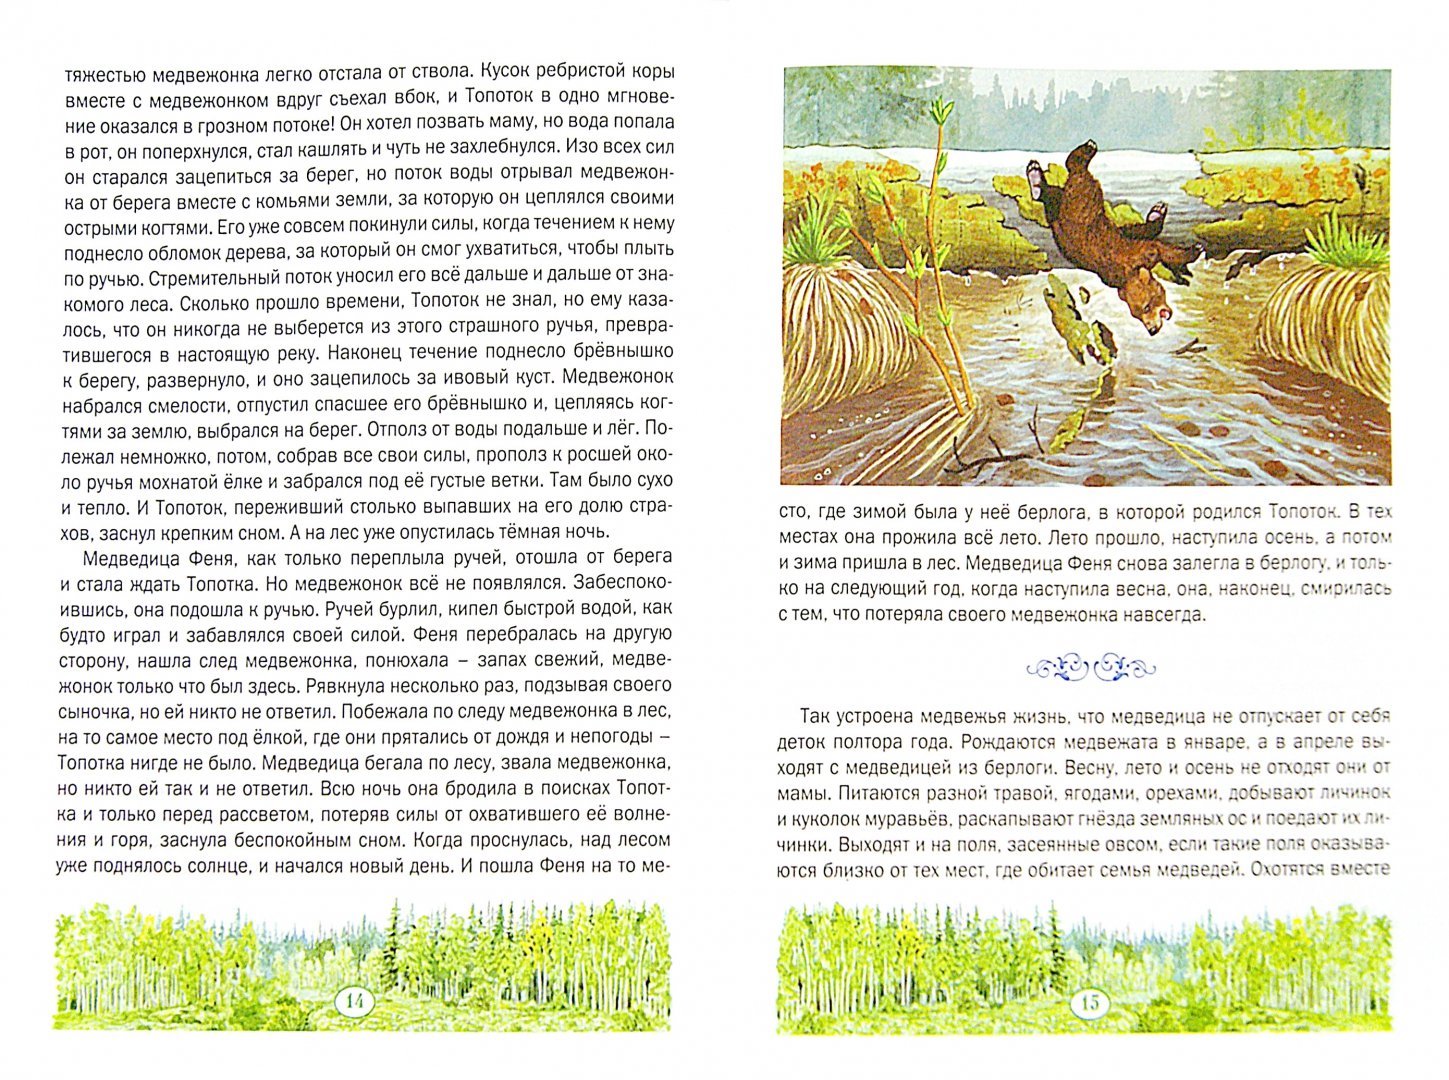 Иллюстрация 1 из 16 для Медвежонок Топоток - Валентин Пажетнов | Лабиринт - книги. Источник: Лабиринт